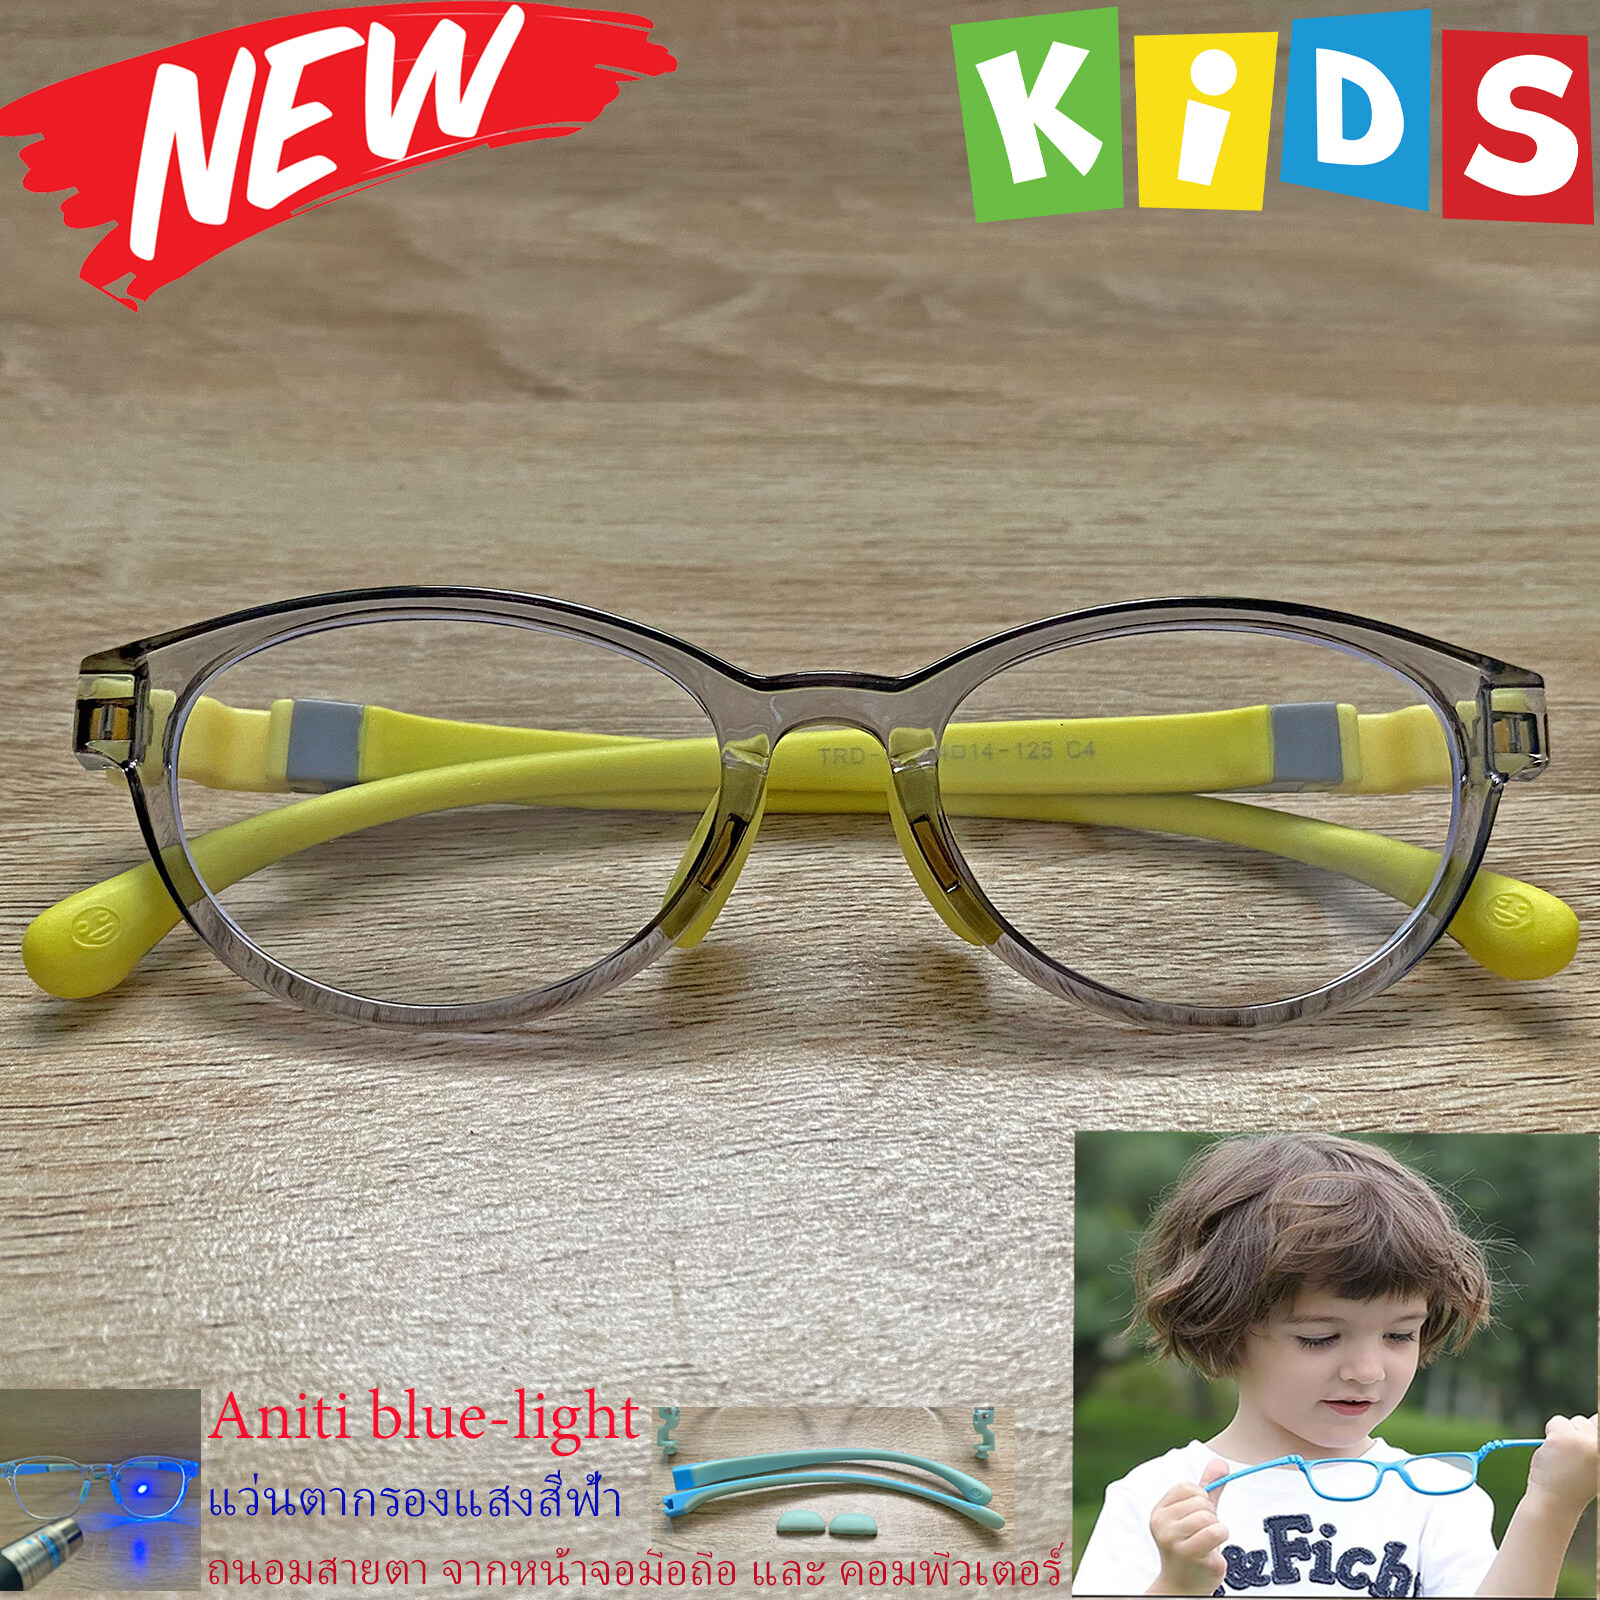 แว่นตาเด็ก กรองแสงสีฟ้า blue block แว่นเด็ก บลูบล็อค รุ่น 05 สีเทา ขาข้อต่อยืดหยุ่น ถอดขาเปลี่ยนได้ วัสดุTR90 เหมาะสำหรับเลนส์สายตา